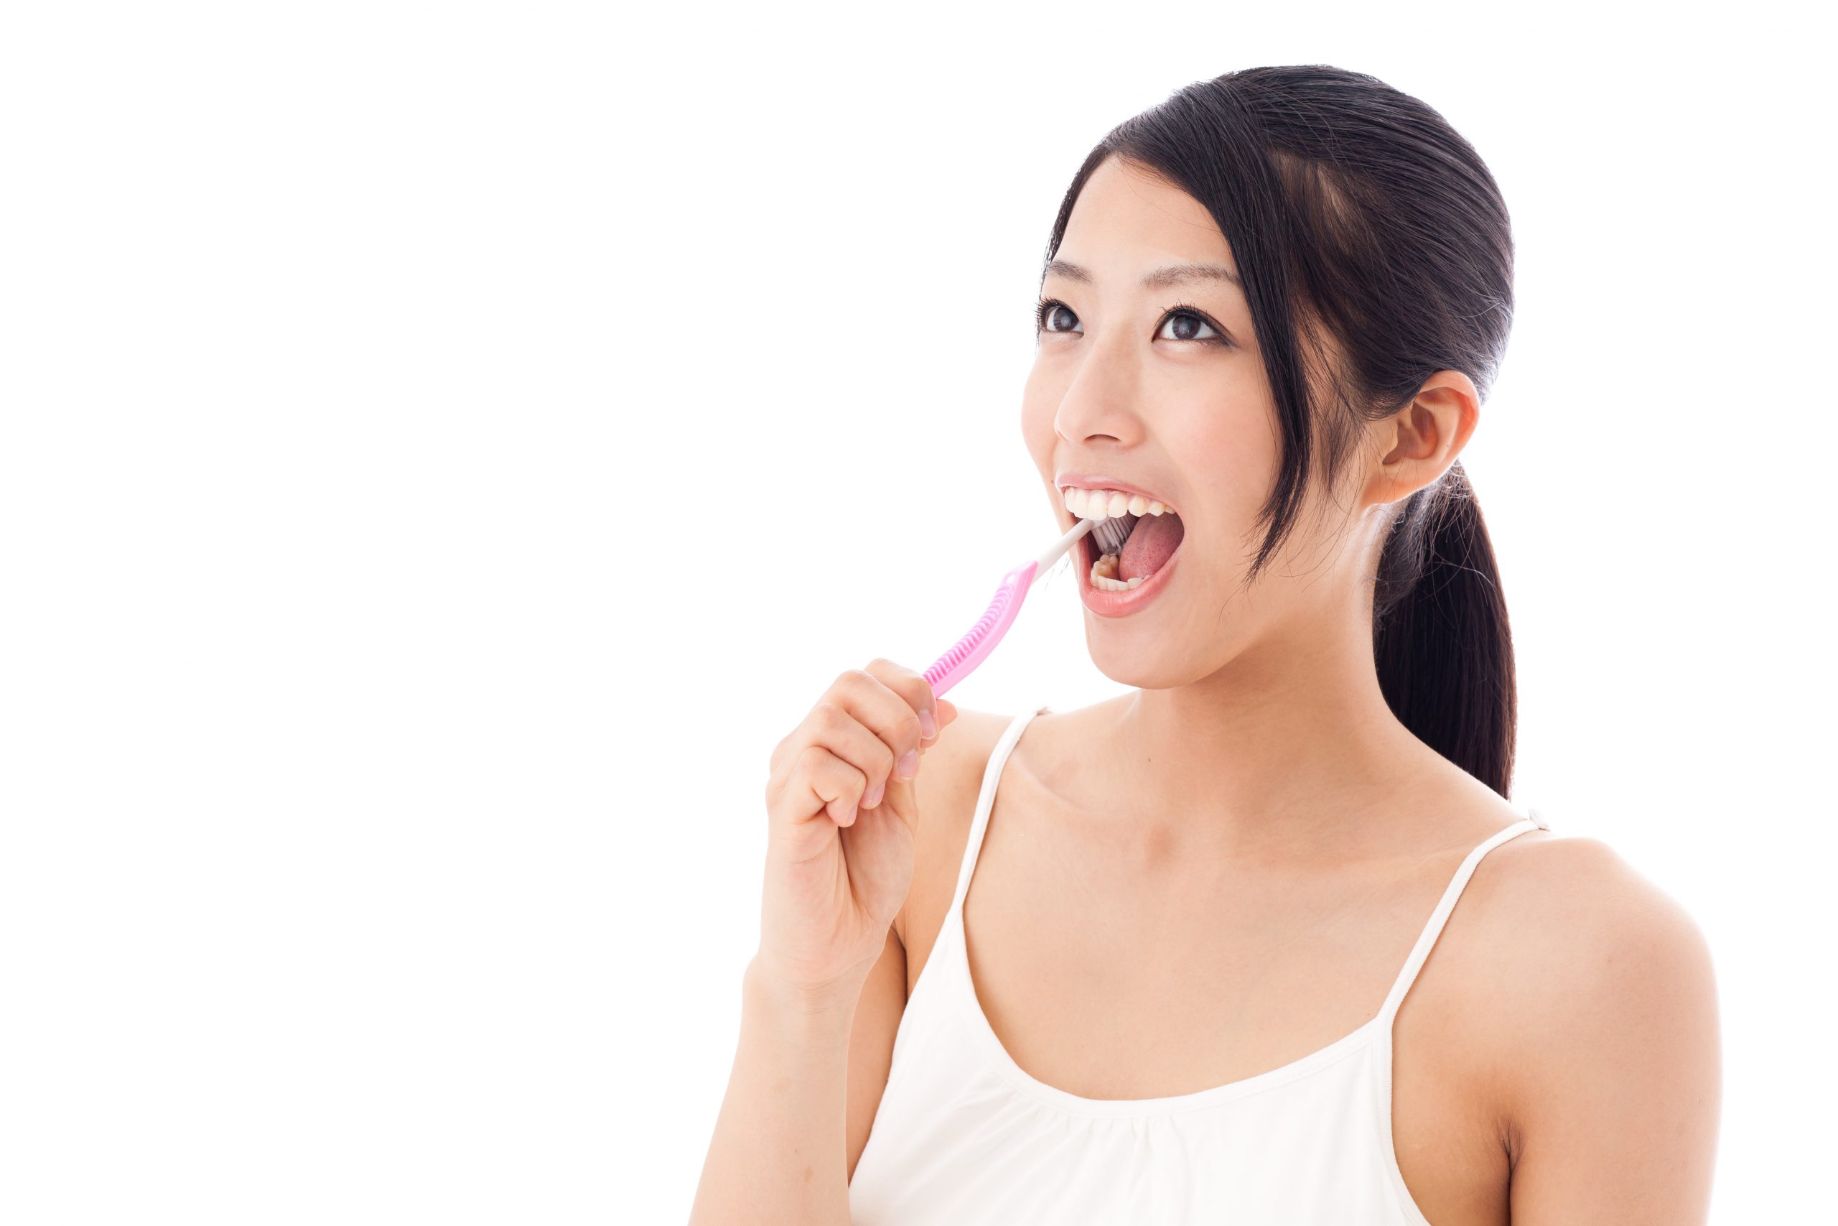 Chăm sóc răng miệng sau khi niềng răng